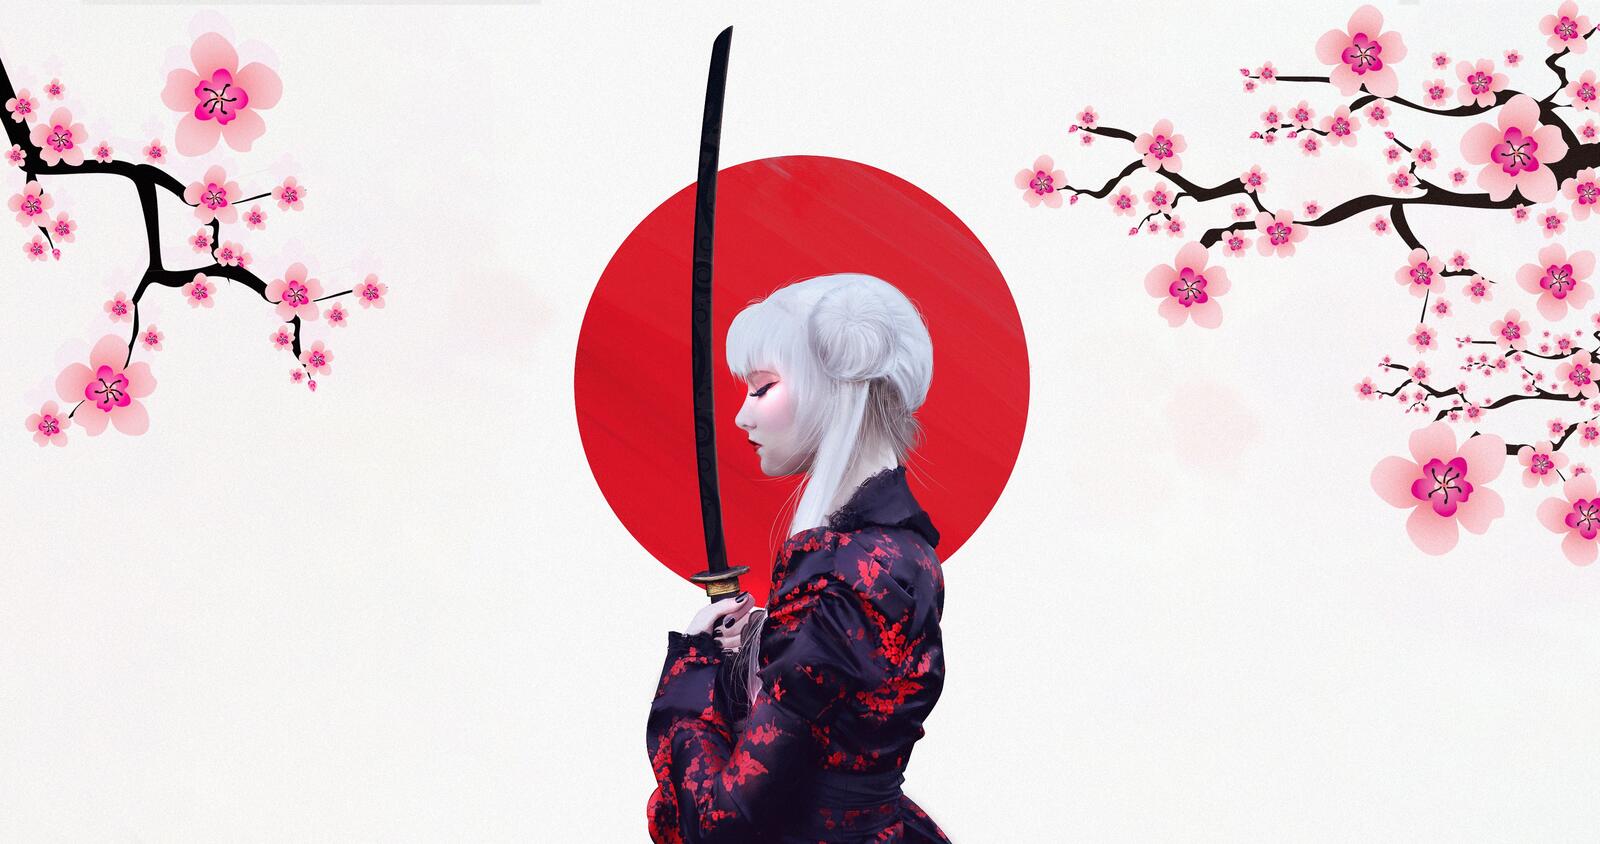 Wallpapers anime girl sword sakura on the desktop